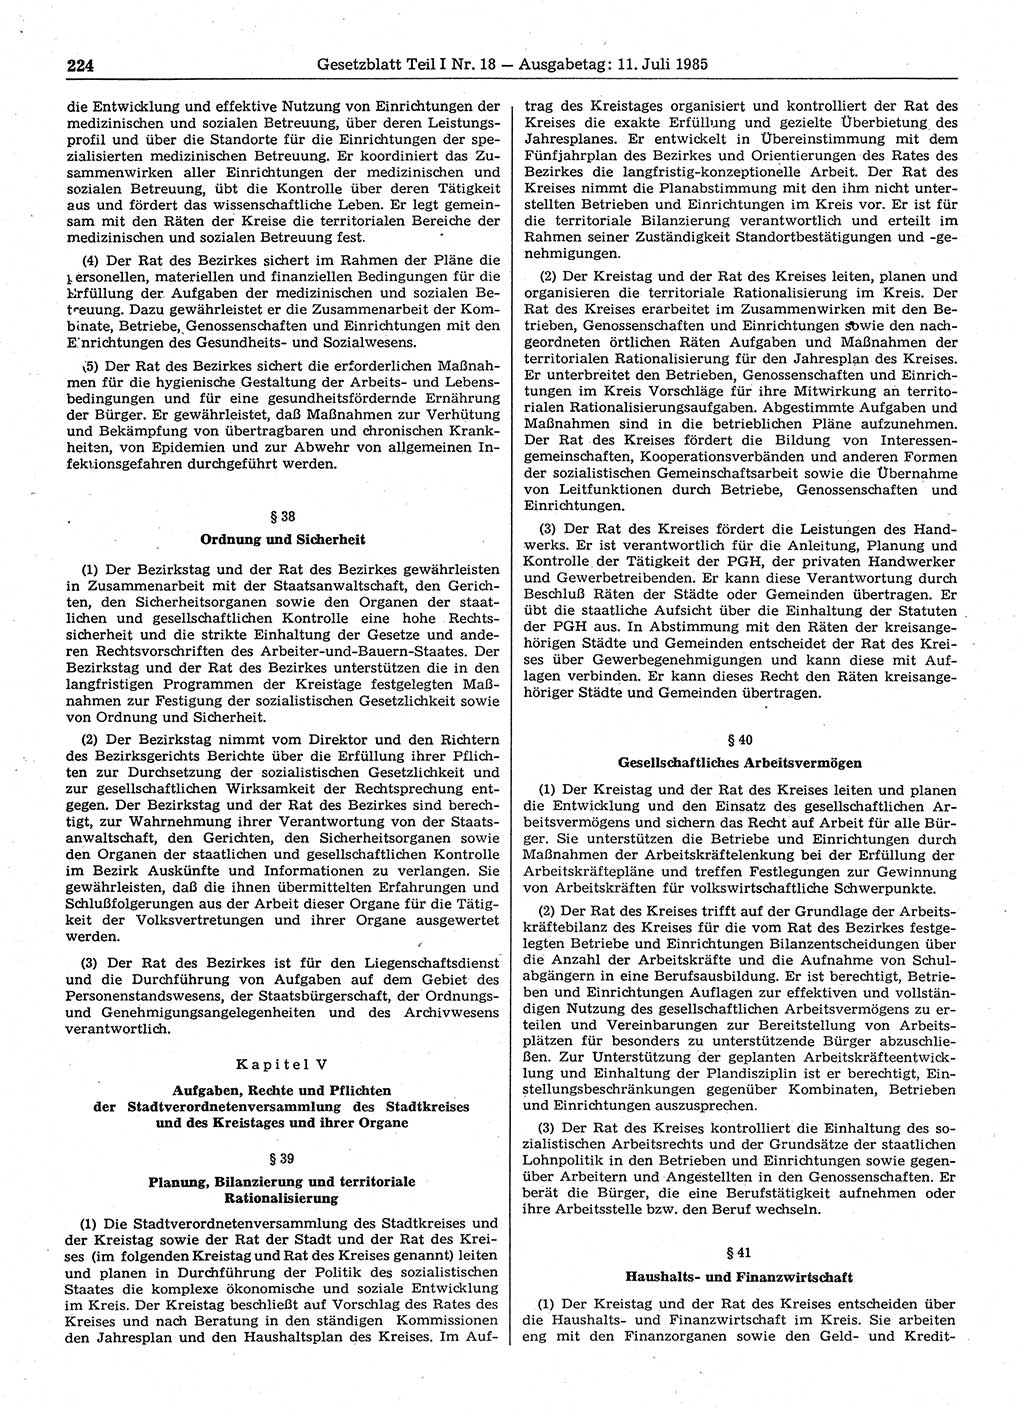 Gesetzblatt (GBl.) der Deutschen Demokratischen Republik (DDR) Teil Ⅰ 1985, Seite 224 (GBl. DDR Ⅰ 1985, S. 224)